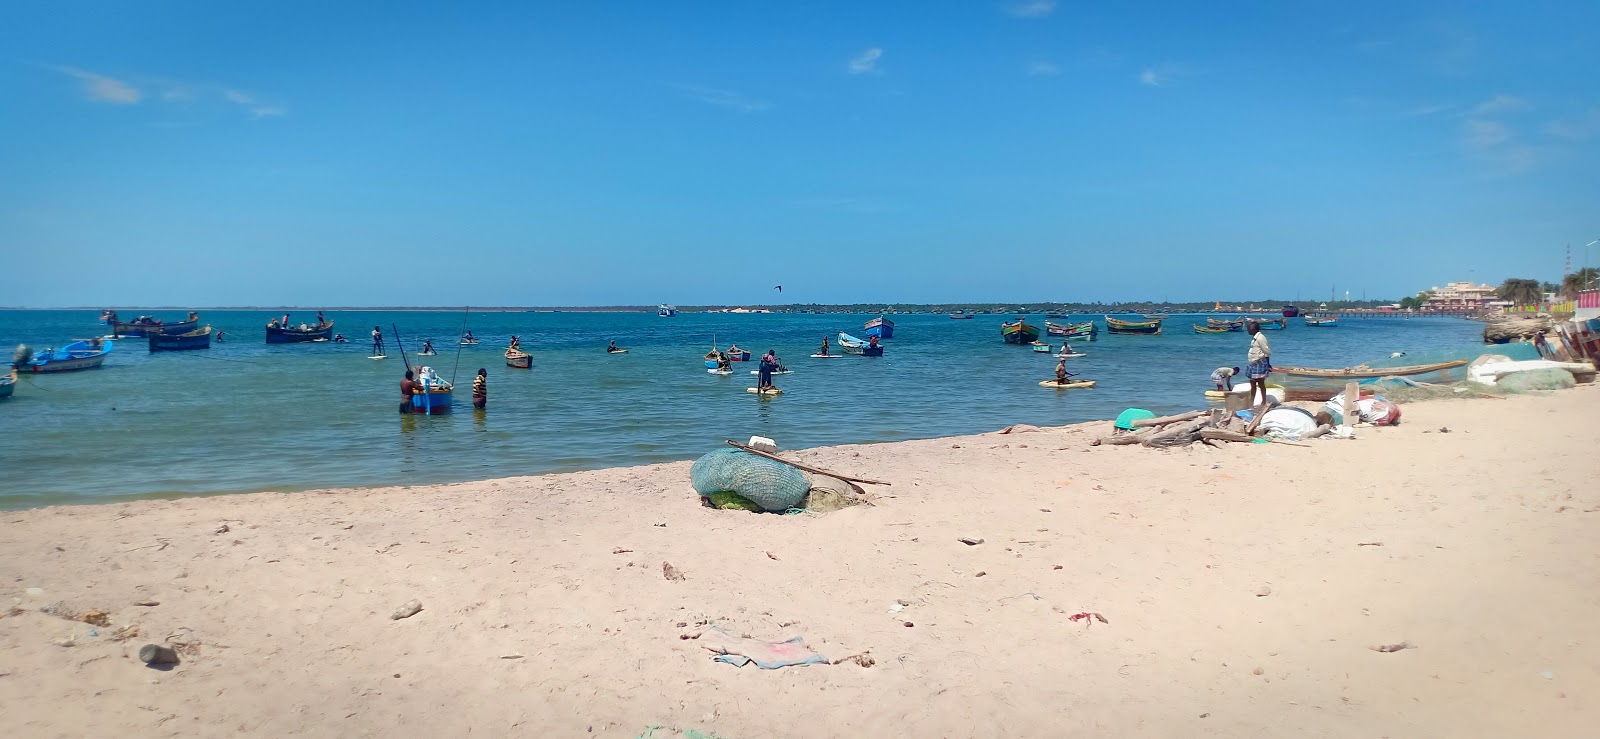 Sangumal Beach, Rameswaram'in fotoğrafı geniş plaj ile birlikte